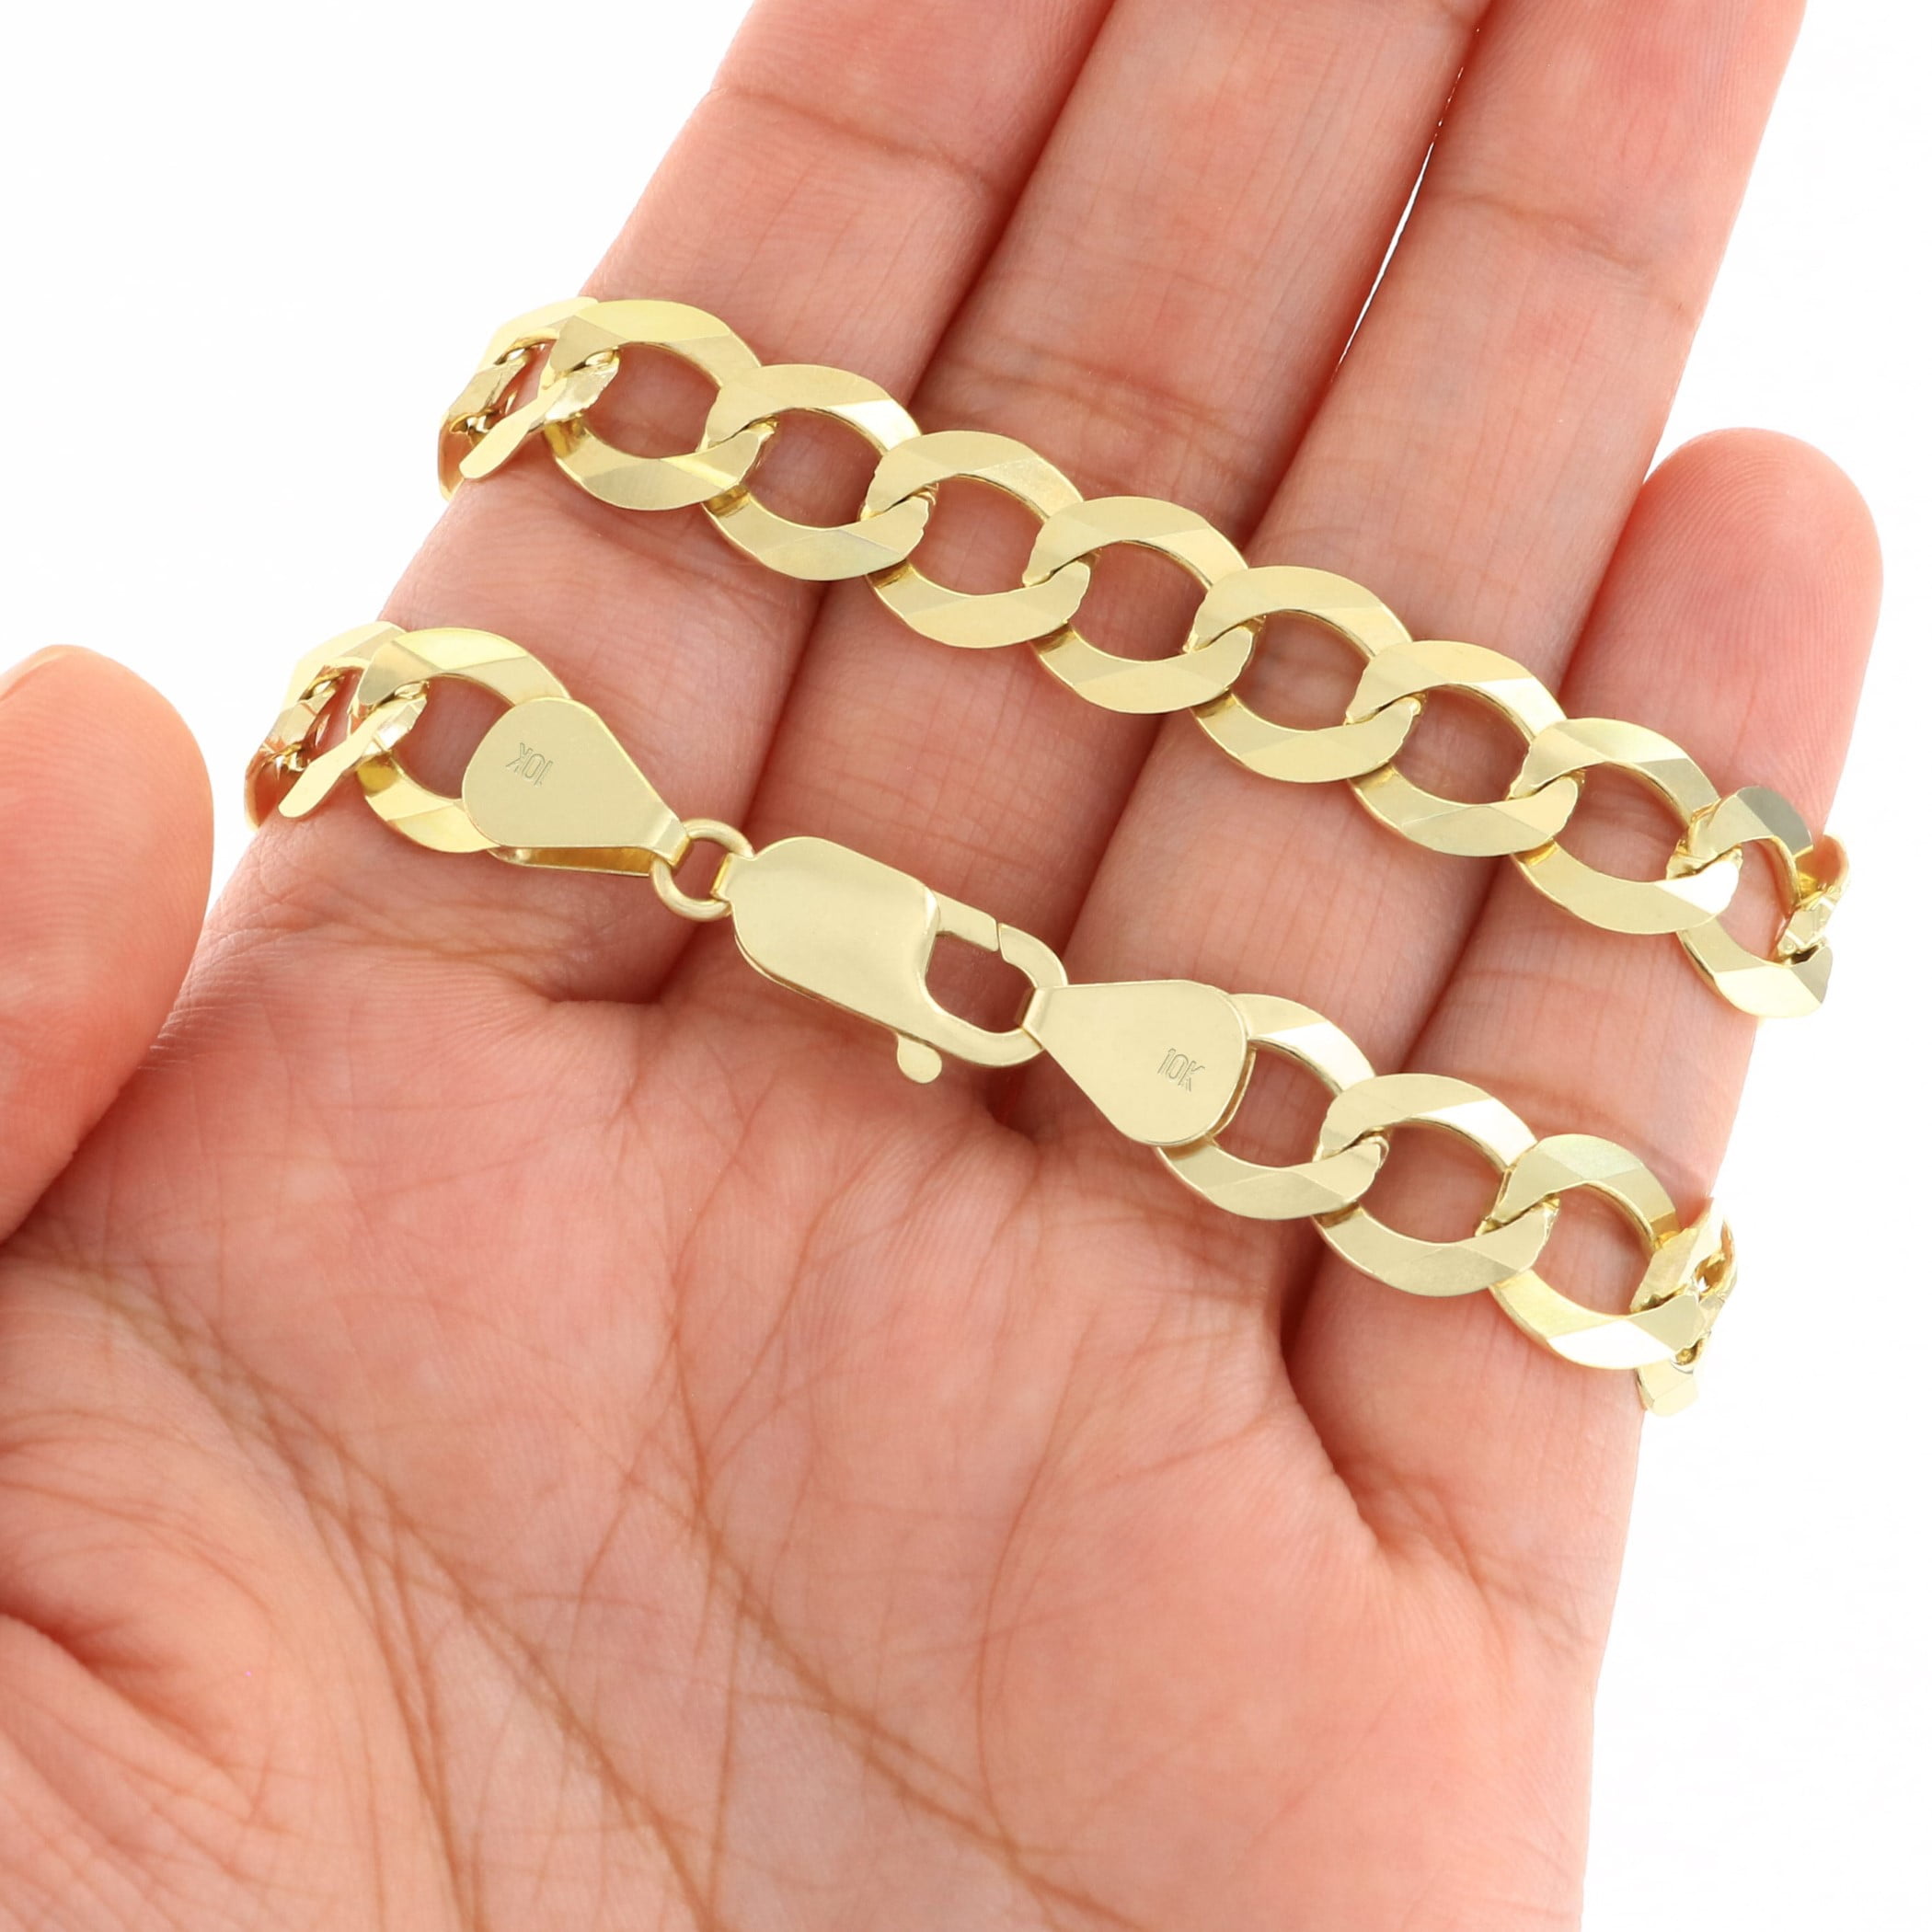 10mm Solid Cuban Link Bracelet in 10K Yellow Gold - Las Villas Jewelry |  Las Villas Jewelry